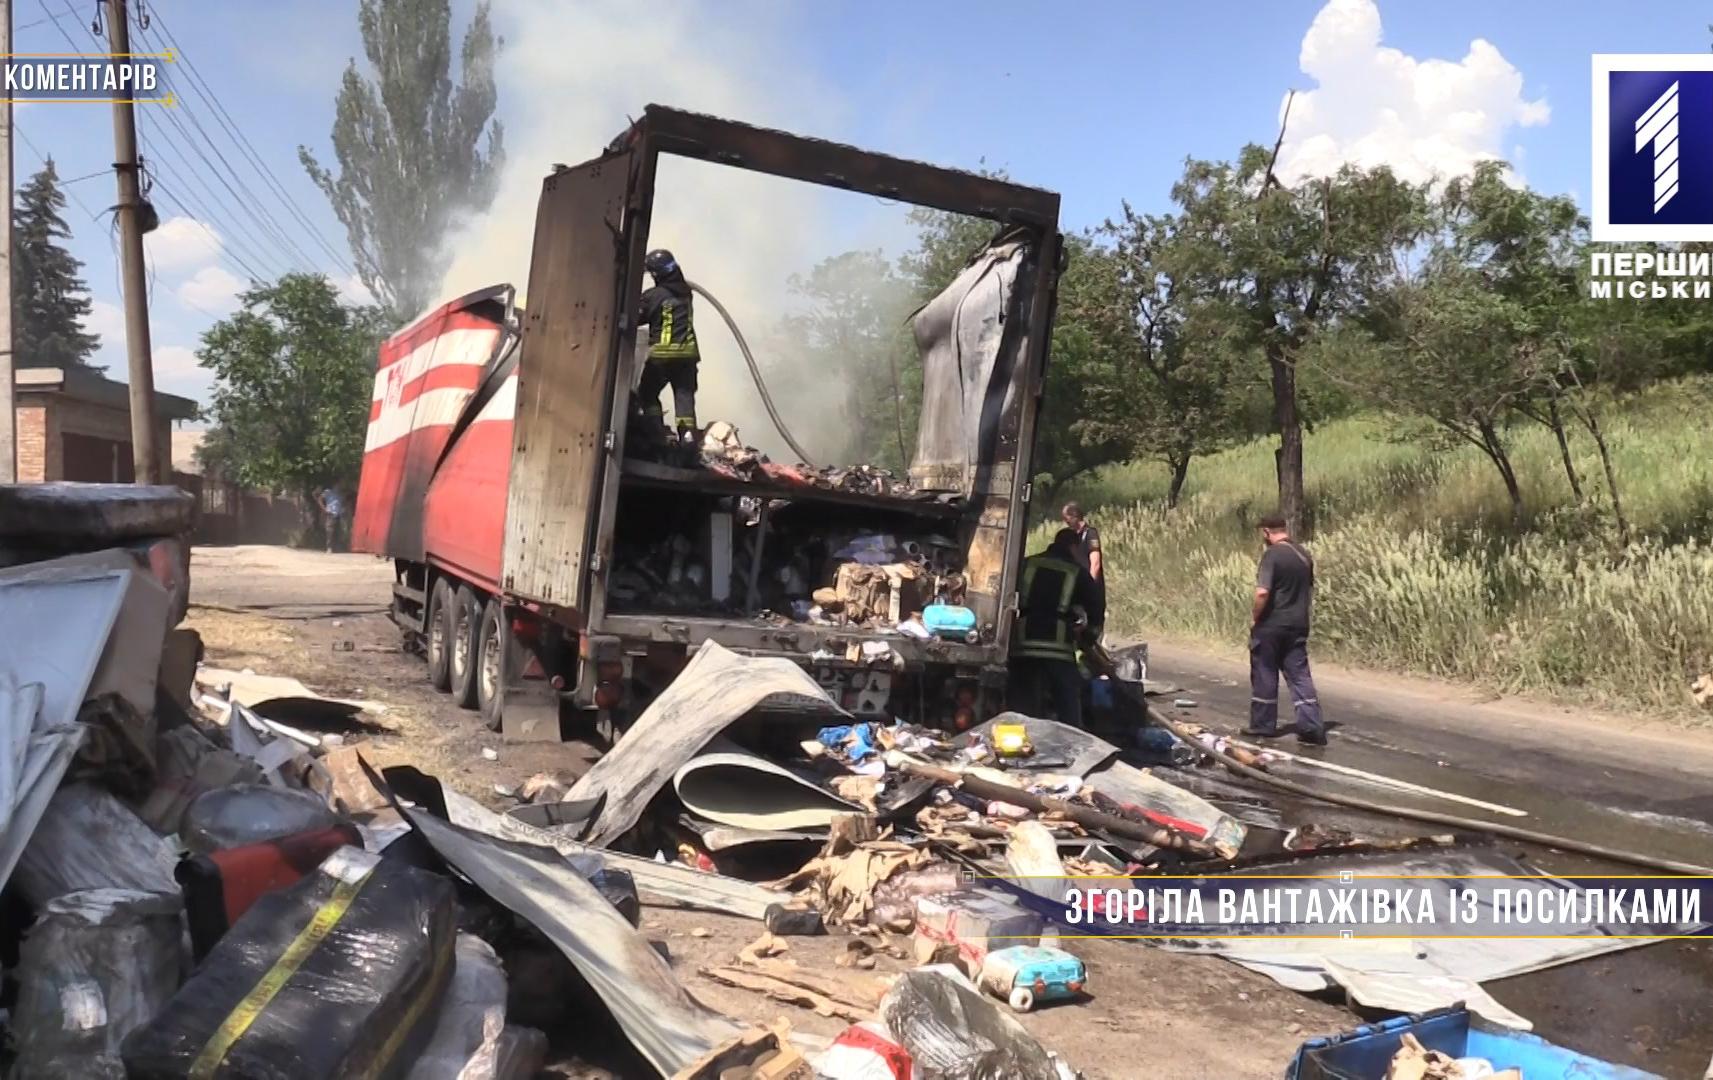 Без коментарів: згоріла вантажівка з посилками